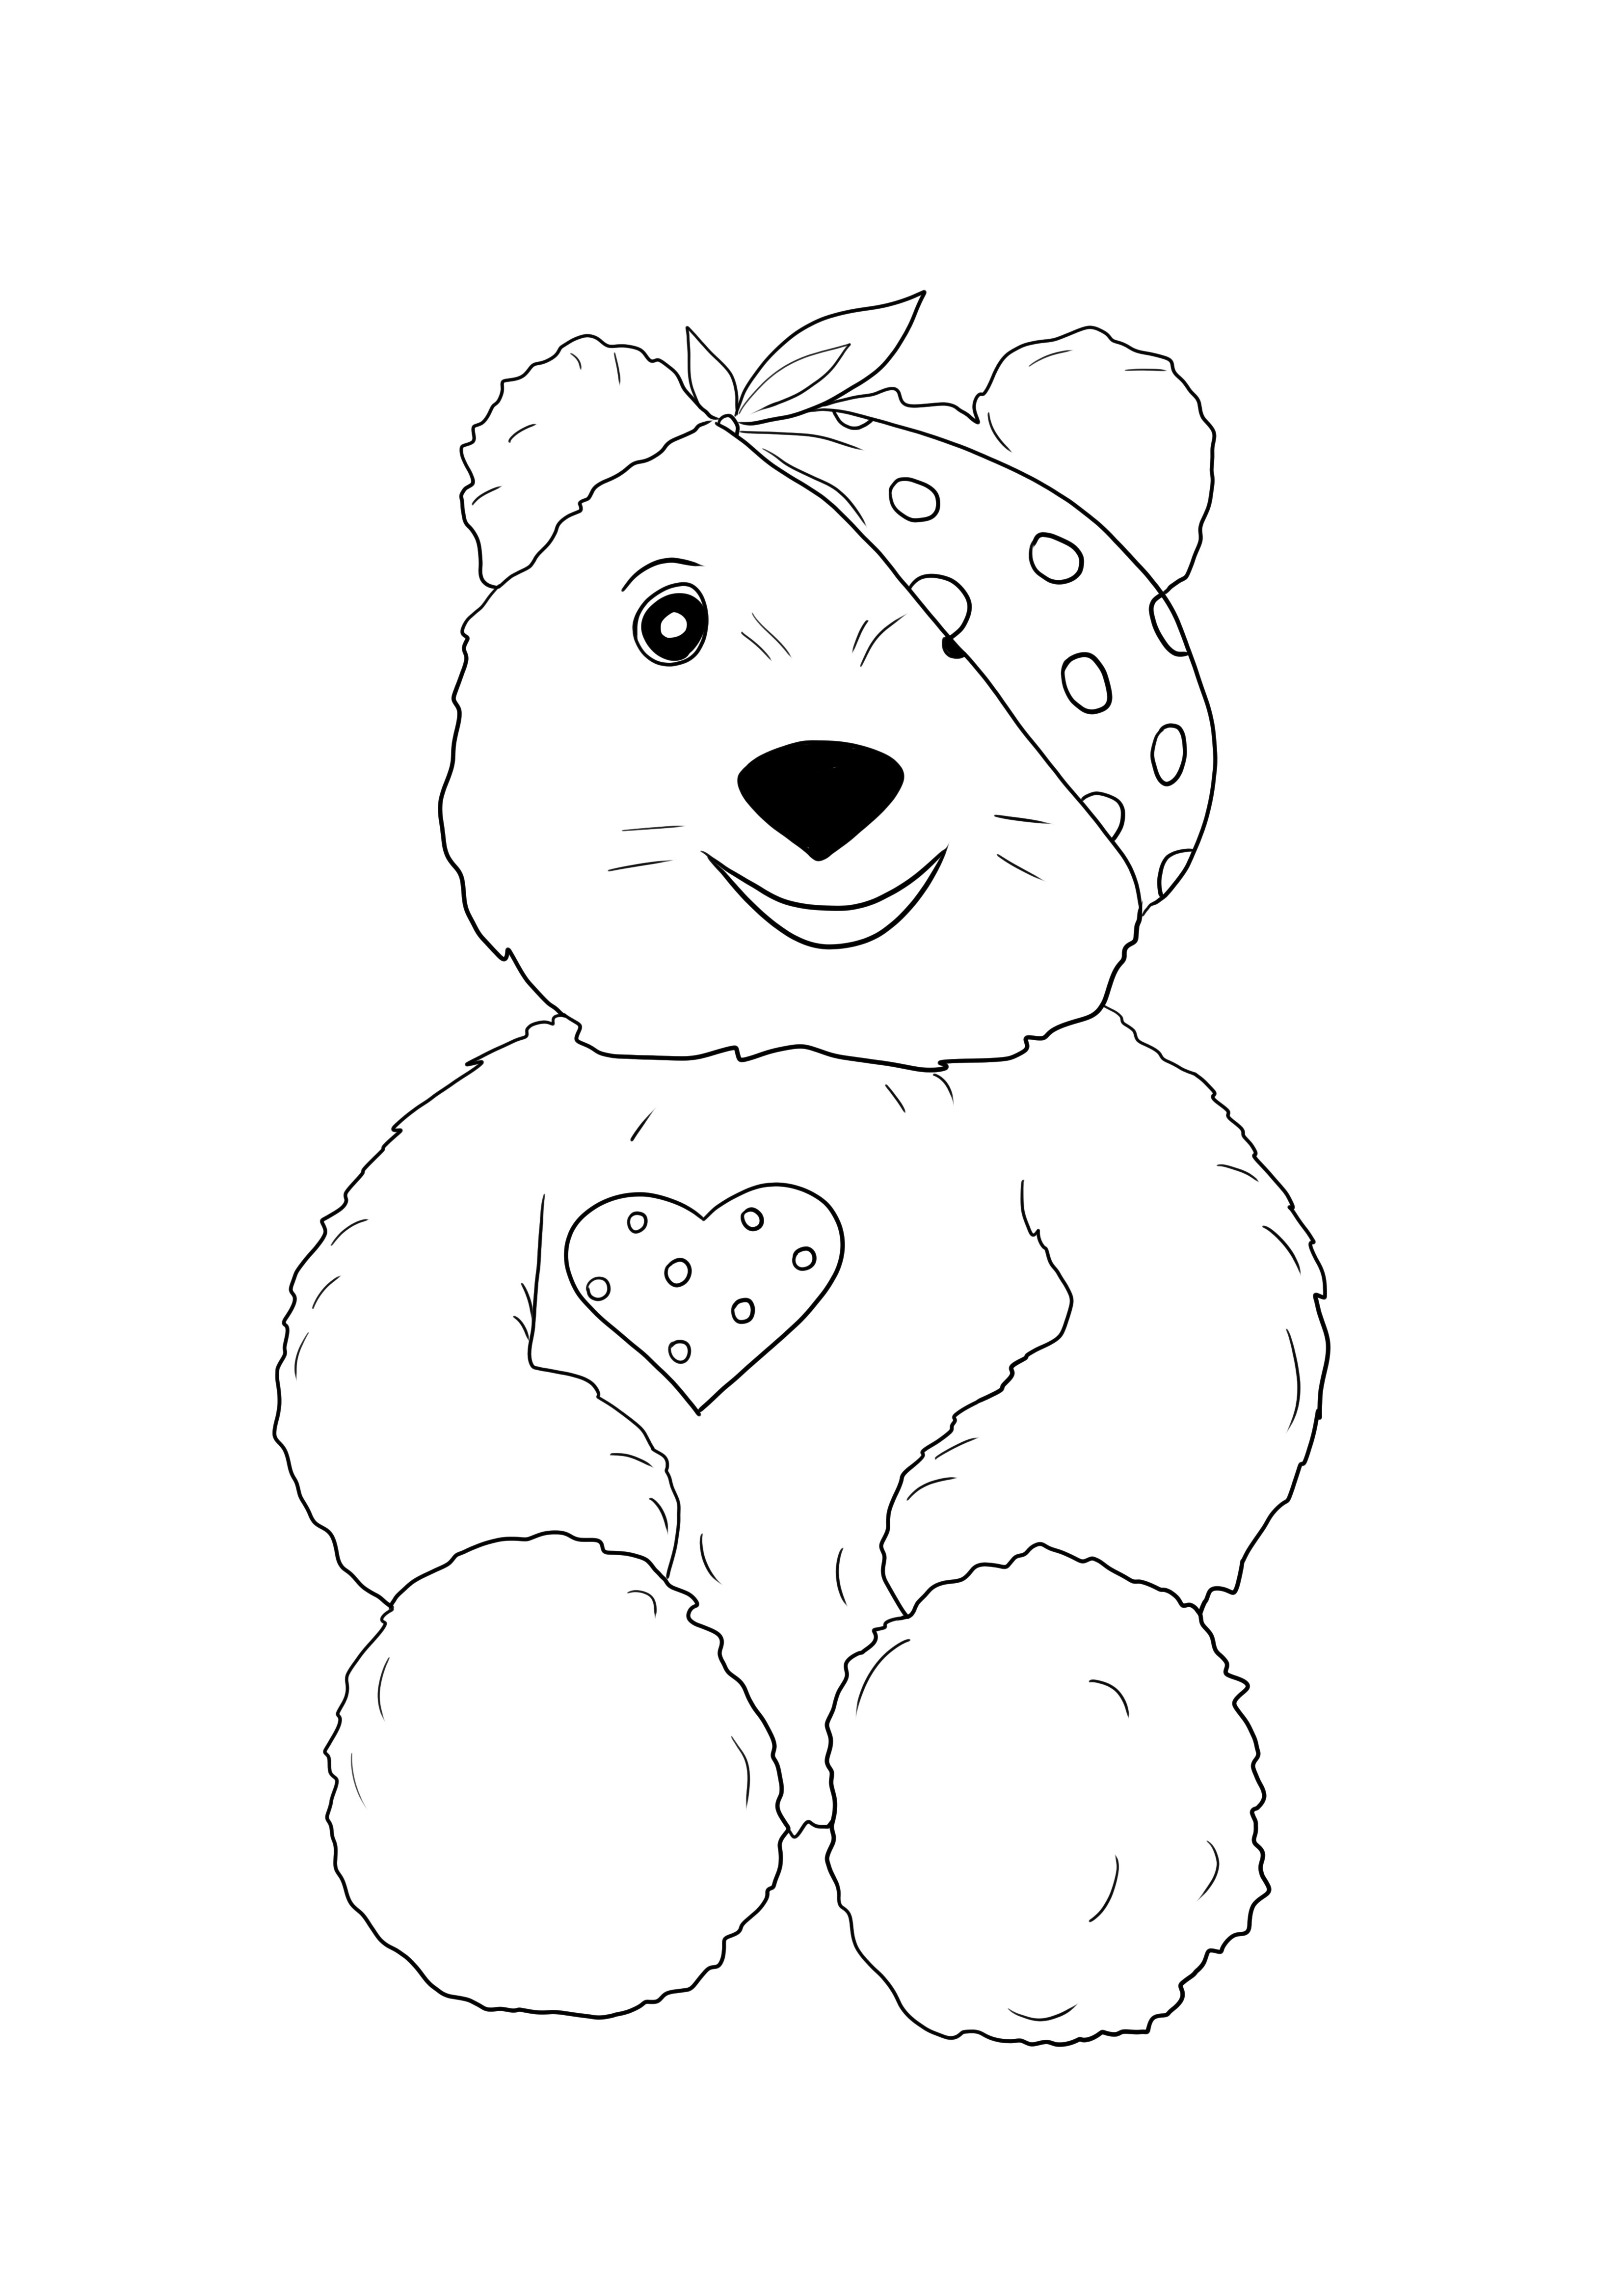 Pudsey orso stampabile gratis per bambini di tutte le età